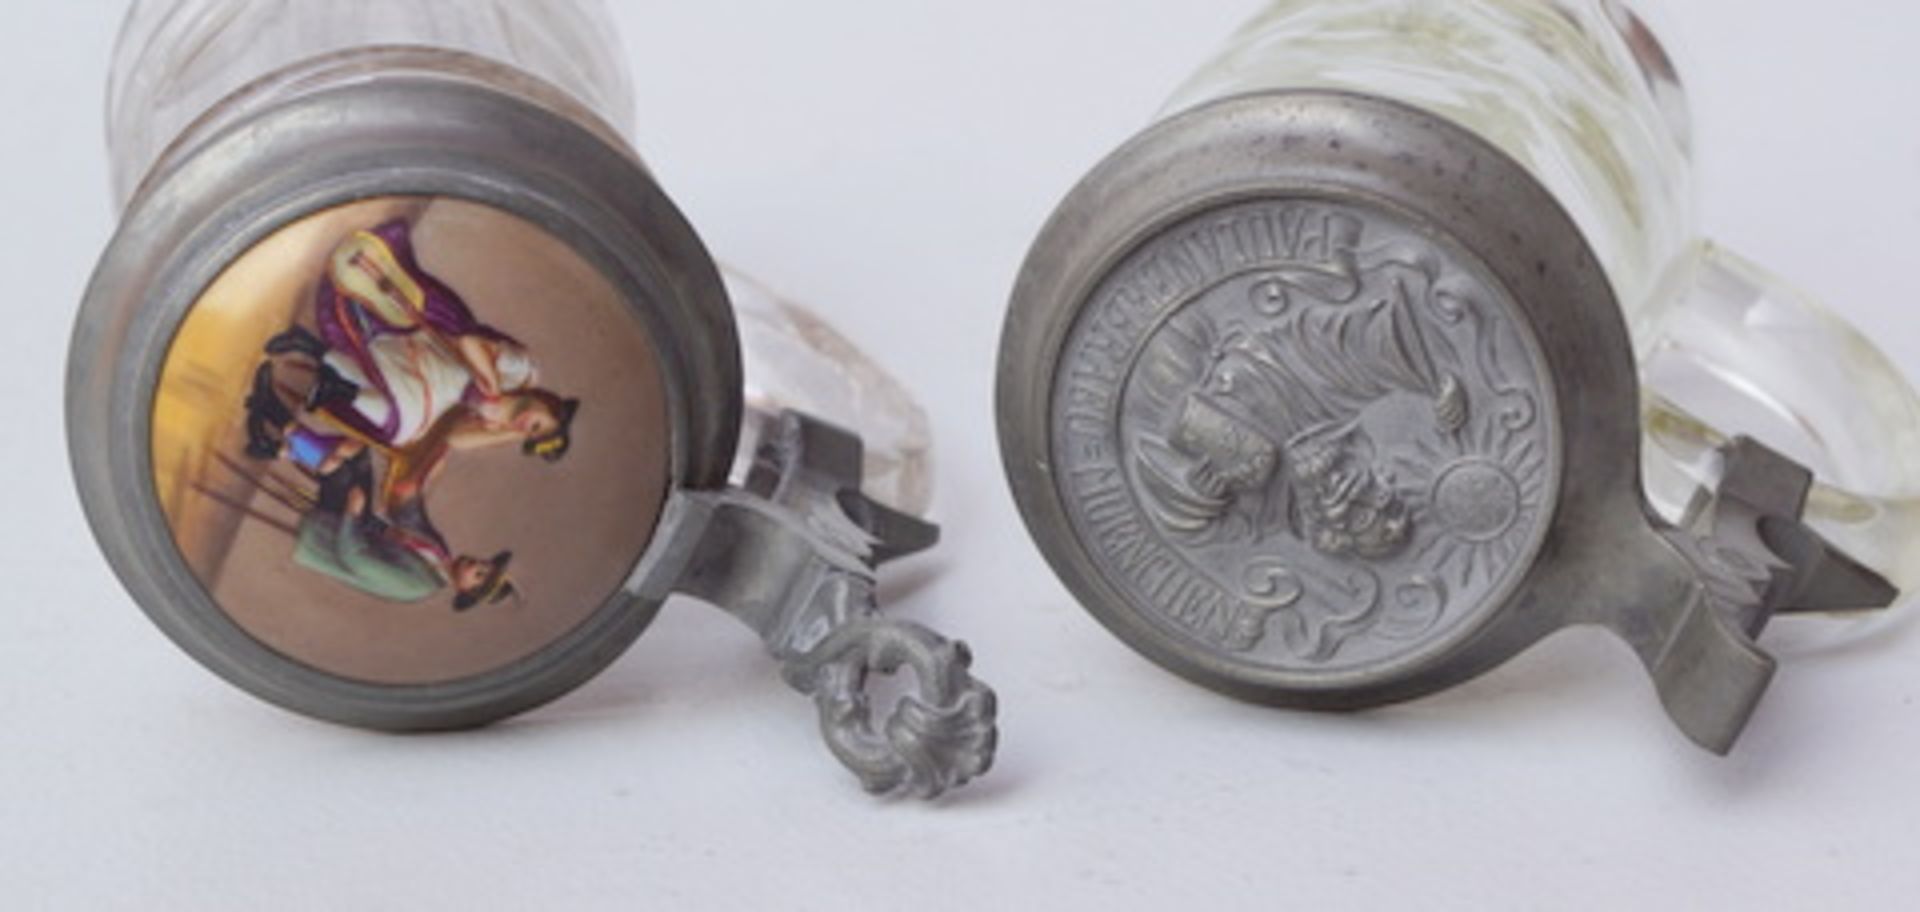 2 Bierhumpen, Anf. 20.Jhd.farbloses Glas modelgeblasen, 1 Krug mit reliefiert gestaltetem - Image 2 of 2